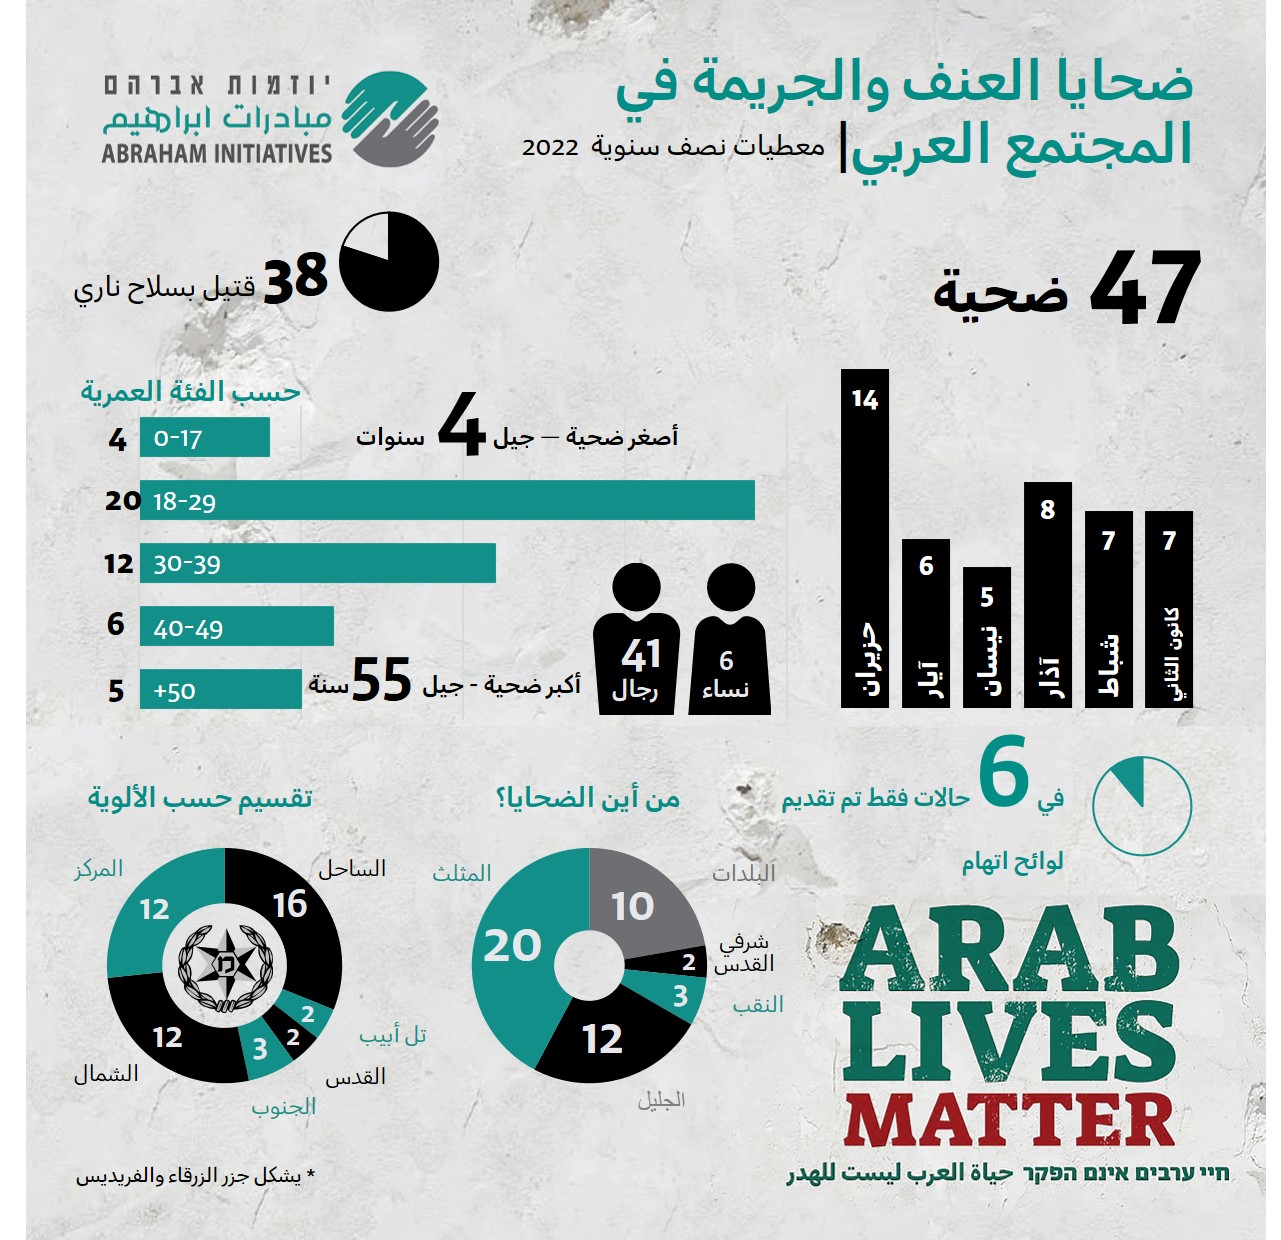 ضاحيا العنف والجريمة في المجتمع العربي النصف الأول من عام 2022 (مبادرات إبراهيم)